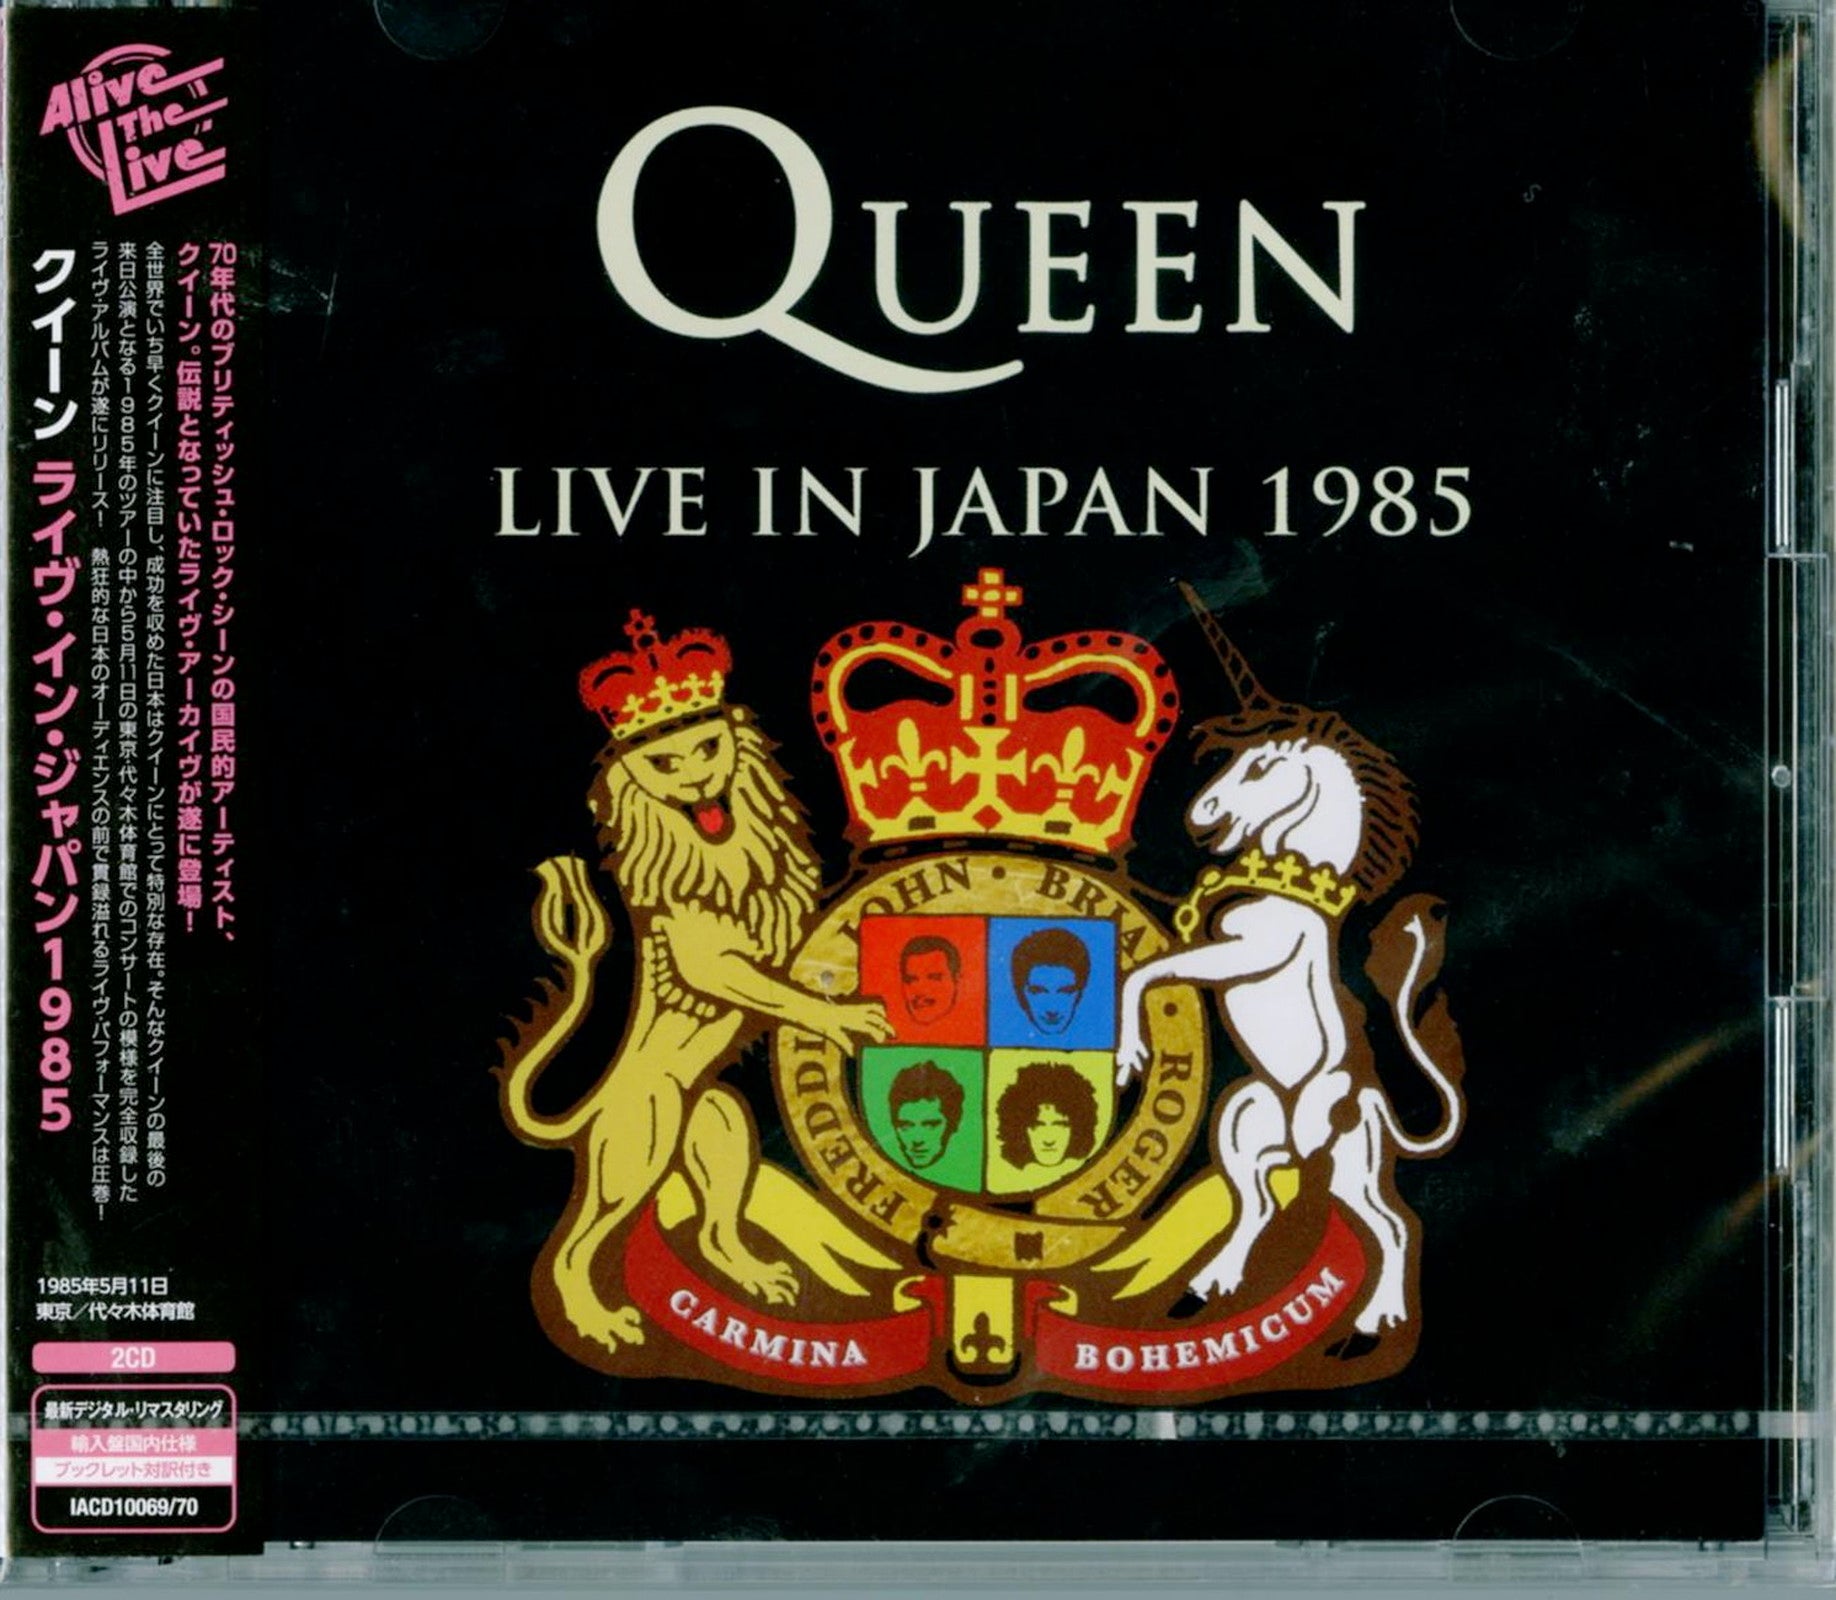 Queen - Live In Japan 1985 - Import 2 CD – CDs Vinyl Japan Store 2018